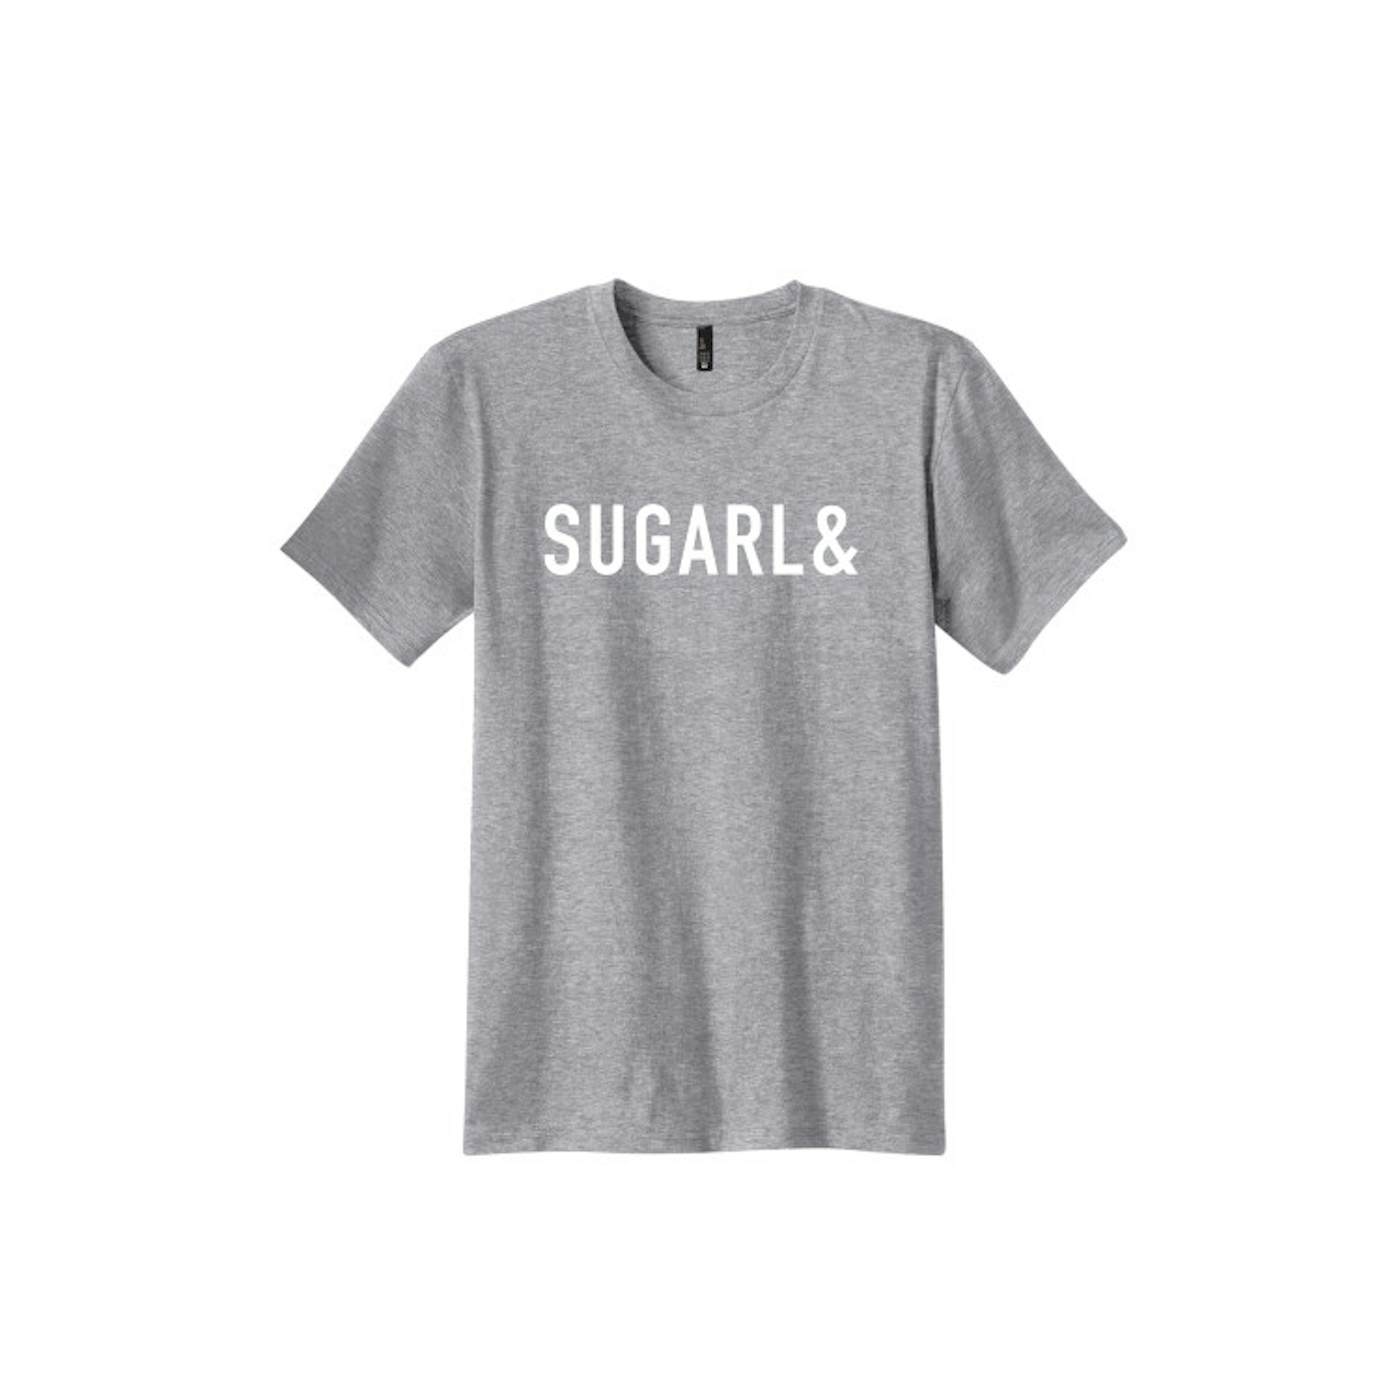 Sugarland SUGARL& Tee